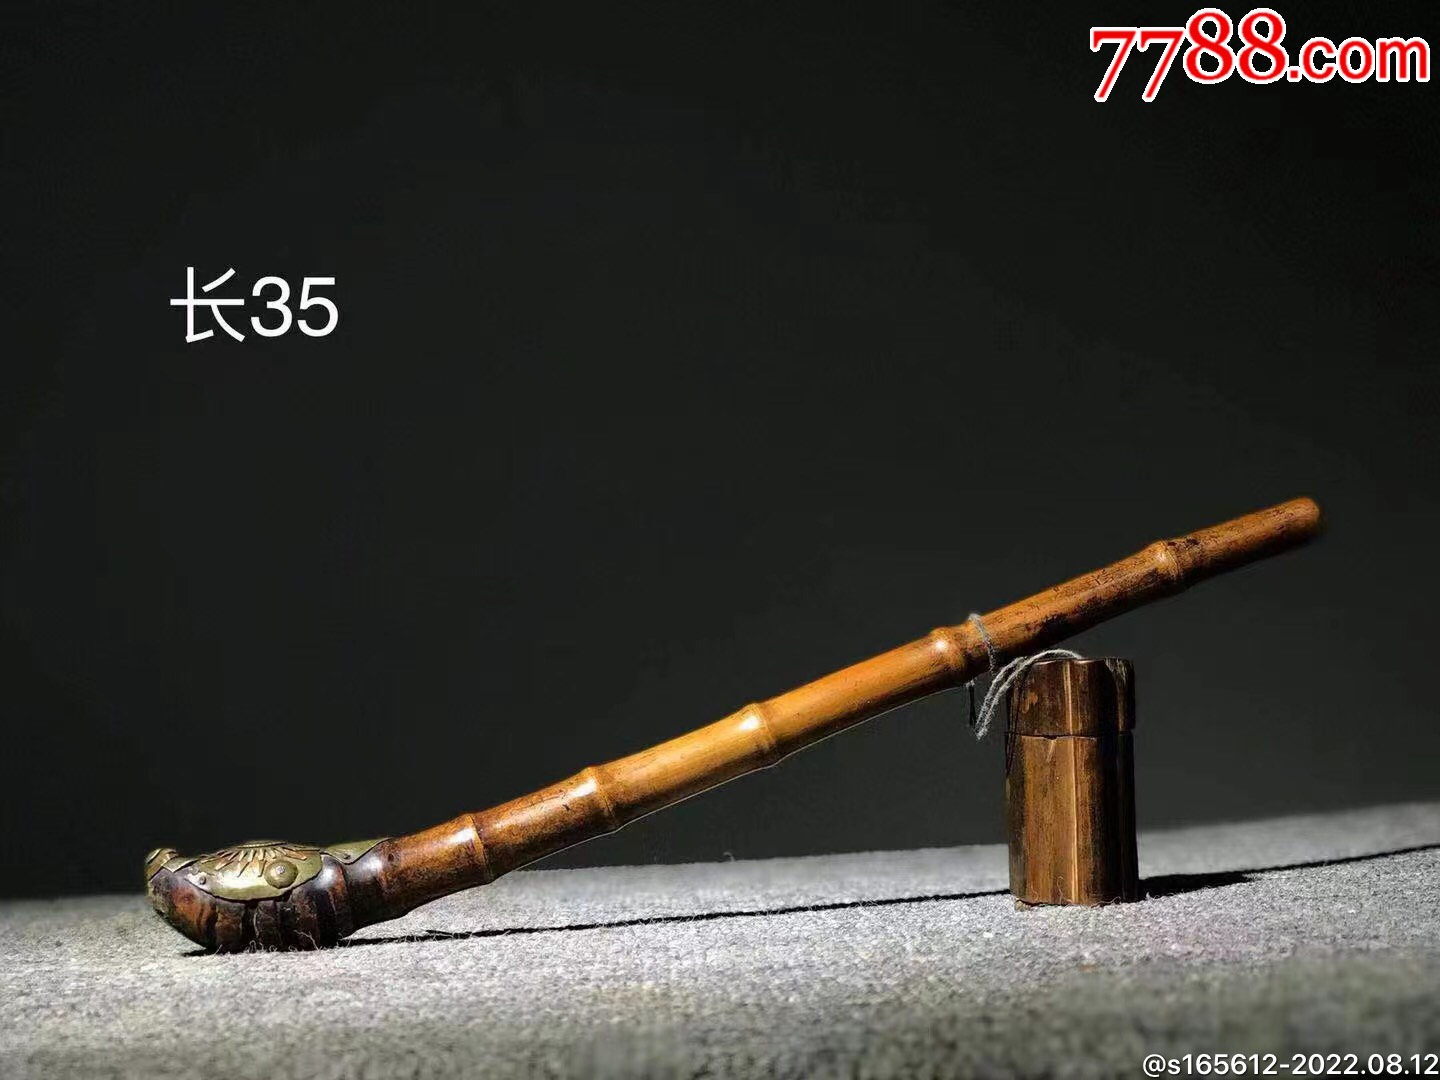 清代角质烟枪-价格:10000元-au33793416-烟杆/烟枪/烟锅 -加价-7788收藏__收藏热线